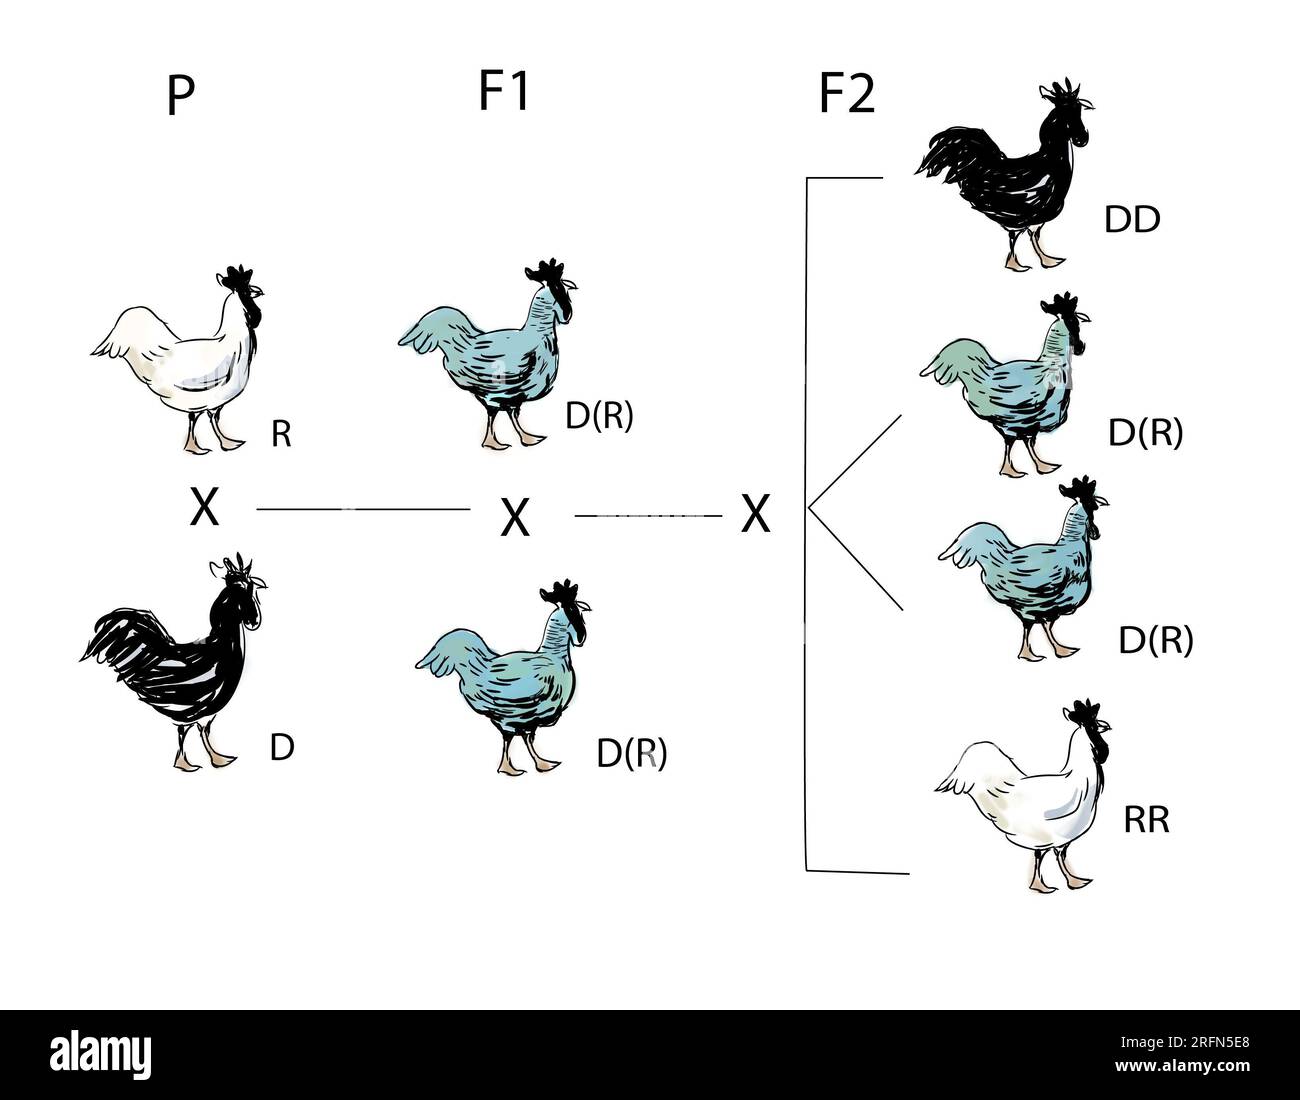 Tableau mendélien pour les poulets. P est la génération parente avec des gènes noirs (dominants) et blancs (récessifs). F1 est la génération hybride des Andalous «bleus», montrant une dominance imparfaite. F2 est la prochaine génération avec 25 % de noir (DD), 50 % de bleu (DR) et 25 % de blanc (RR). Banque D'Images